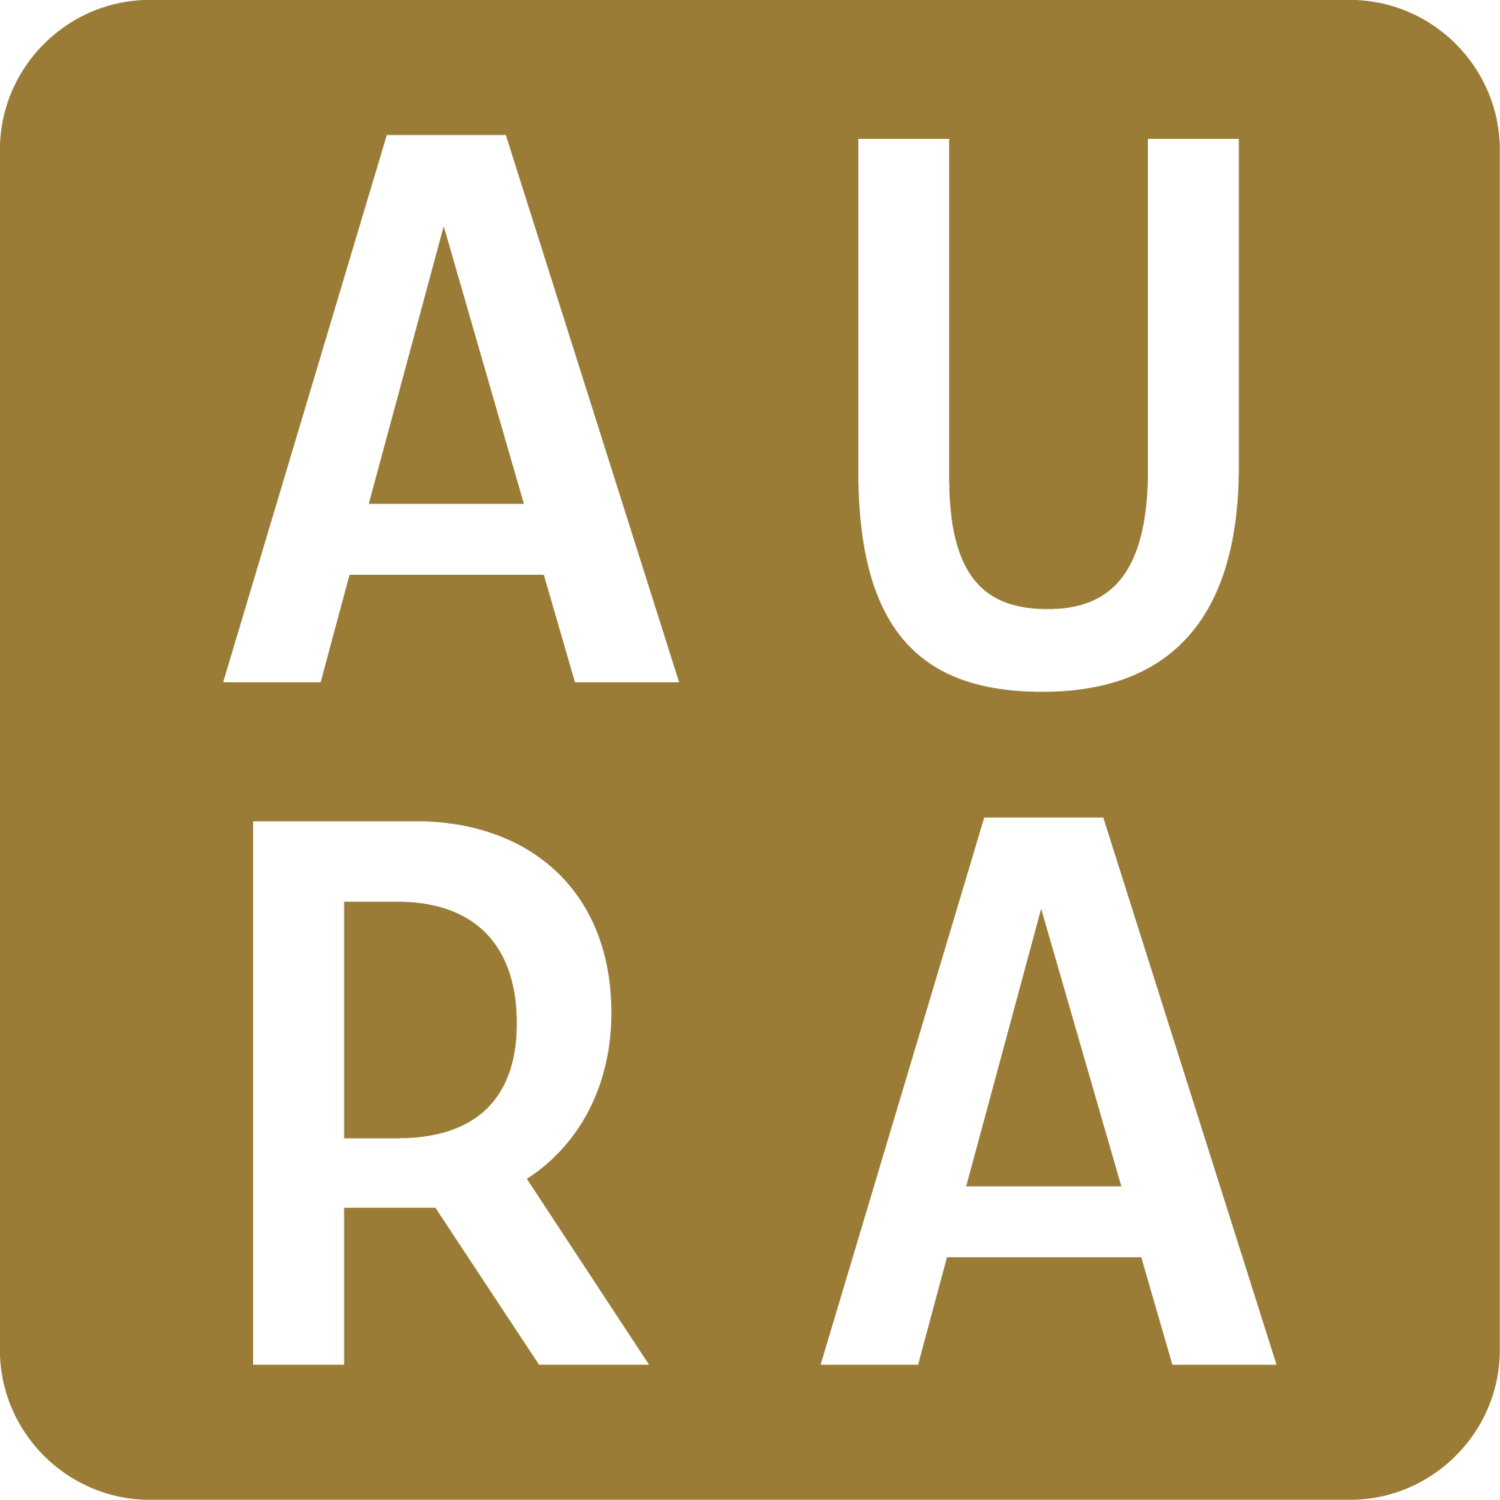 AURA Hobart